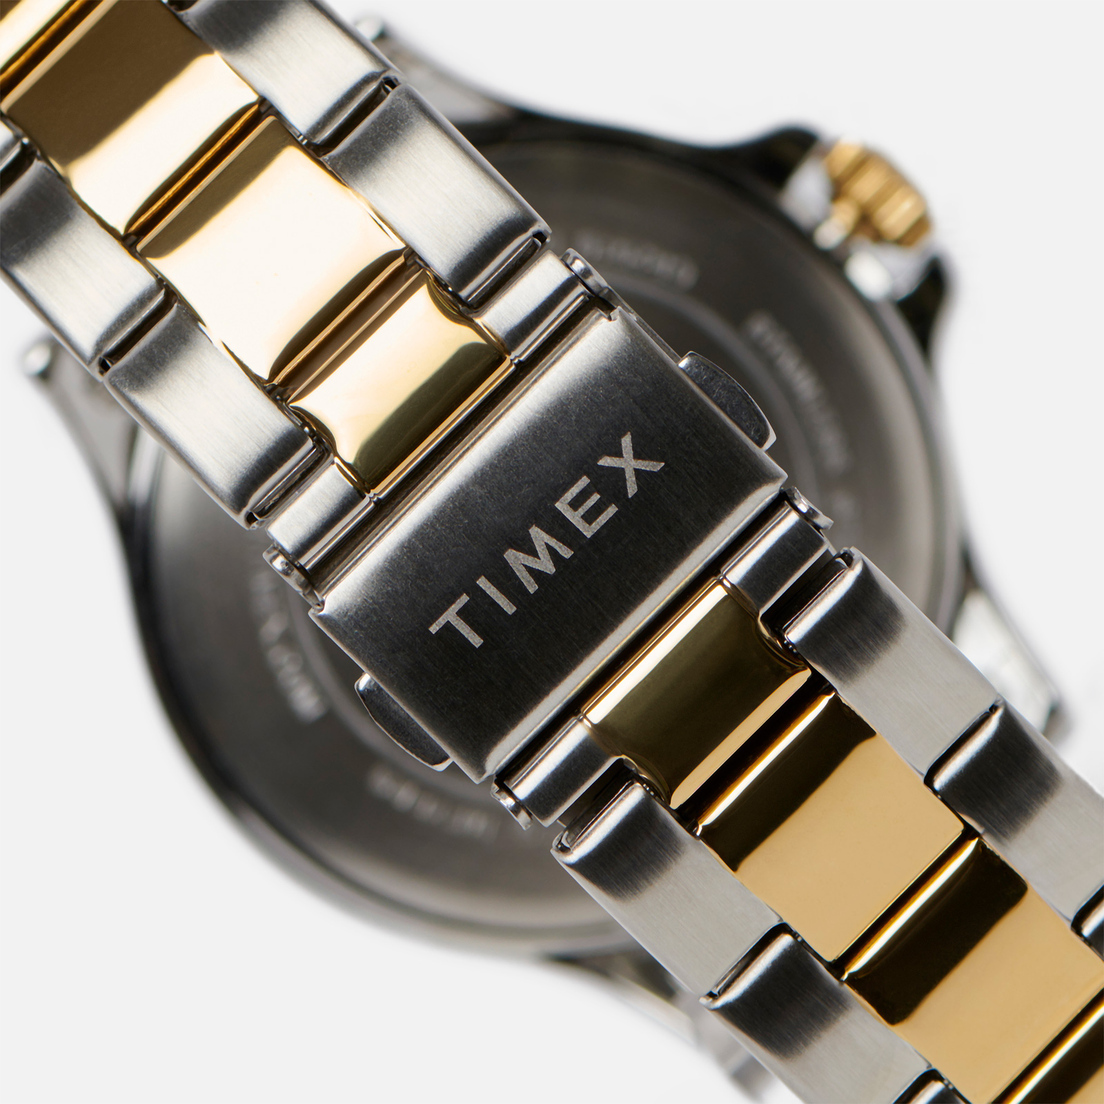 Timex Наручные часы Navi XL